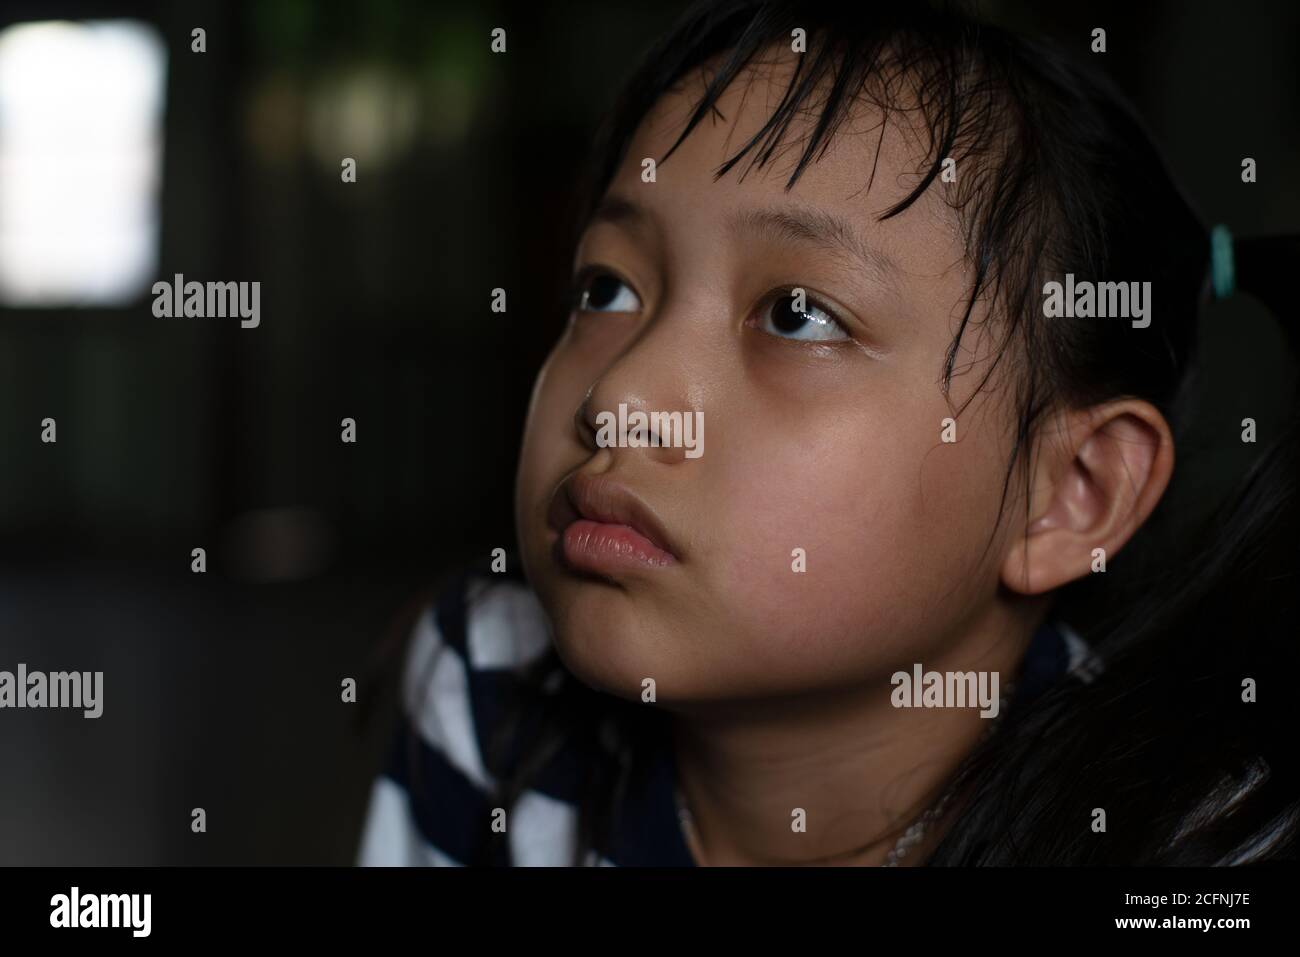 Asiatische kleines Kind Mädchen suchen und denken mit einsam Und Traurigkeit.Low-Key-Stil Stockfoto